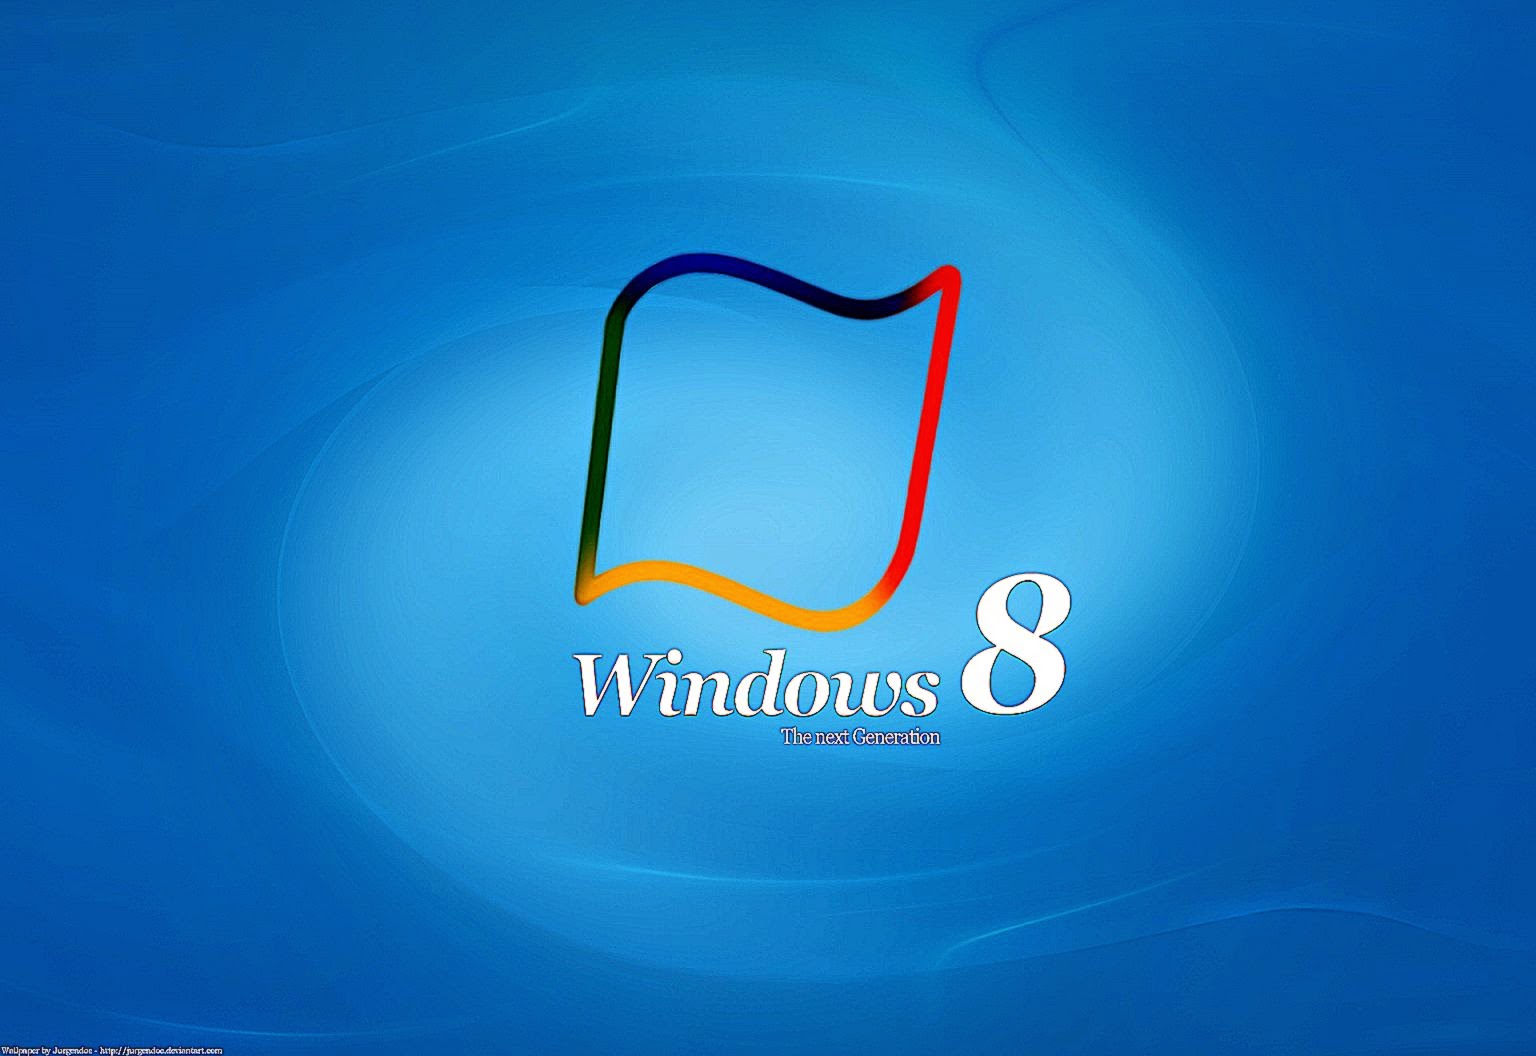 Top 10 Windows 8 Wallpaper HD  TechZill